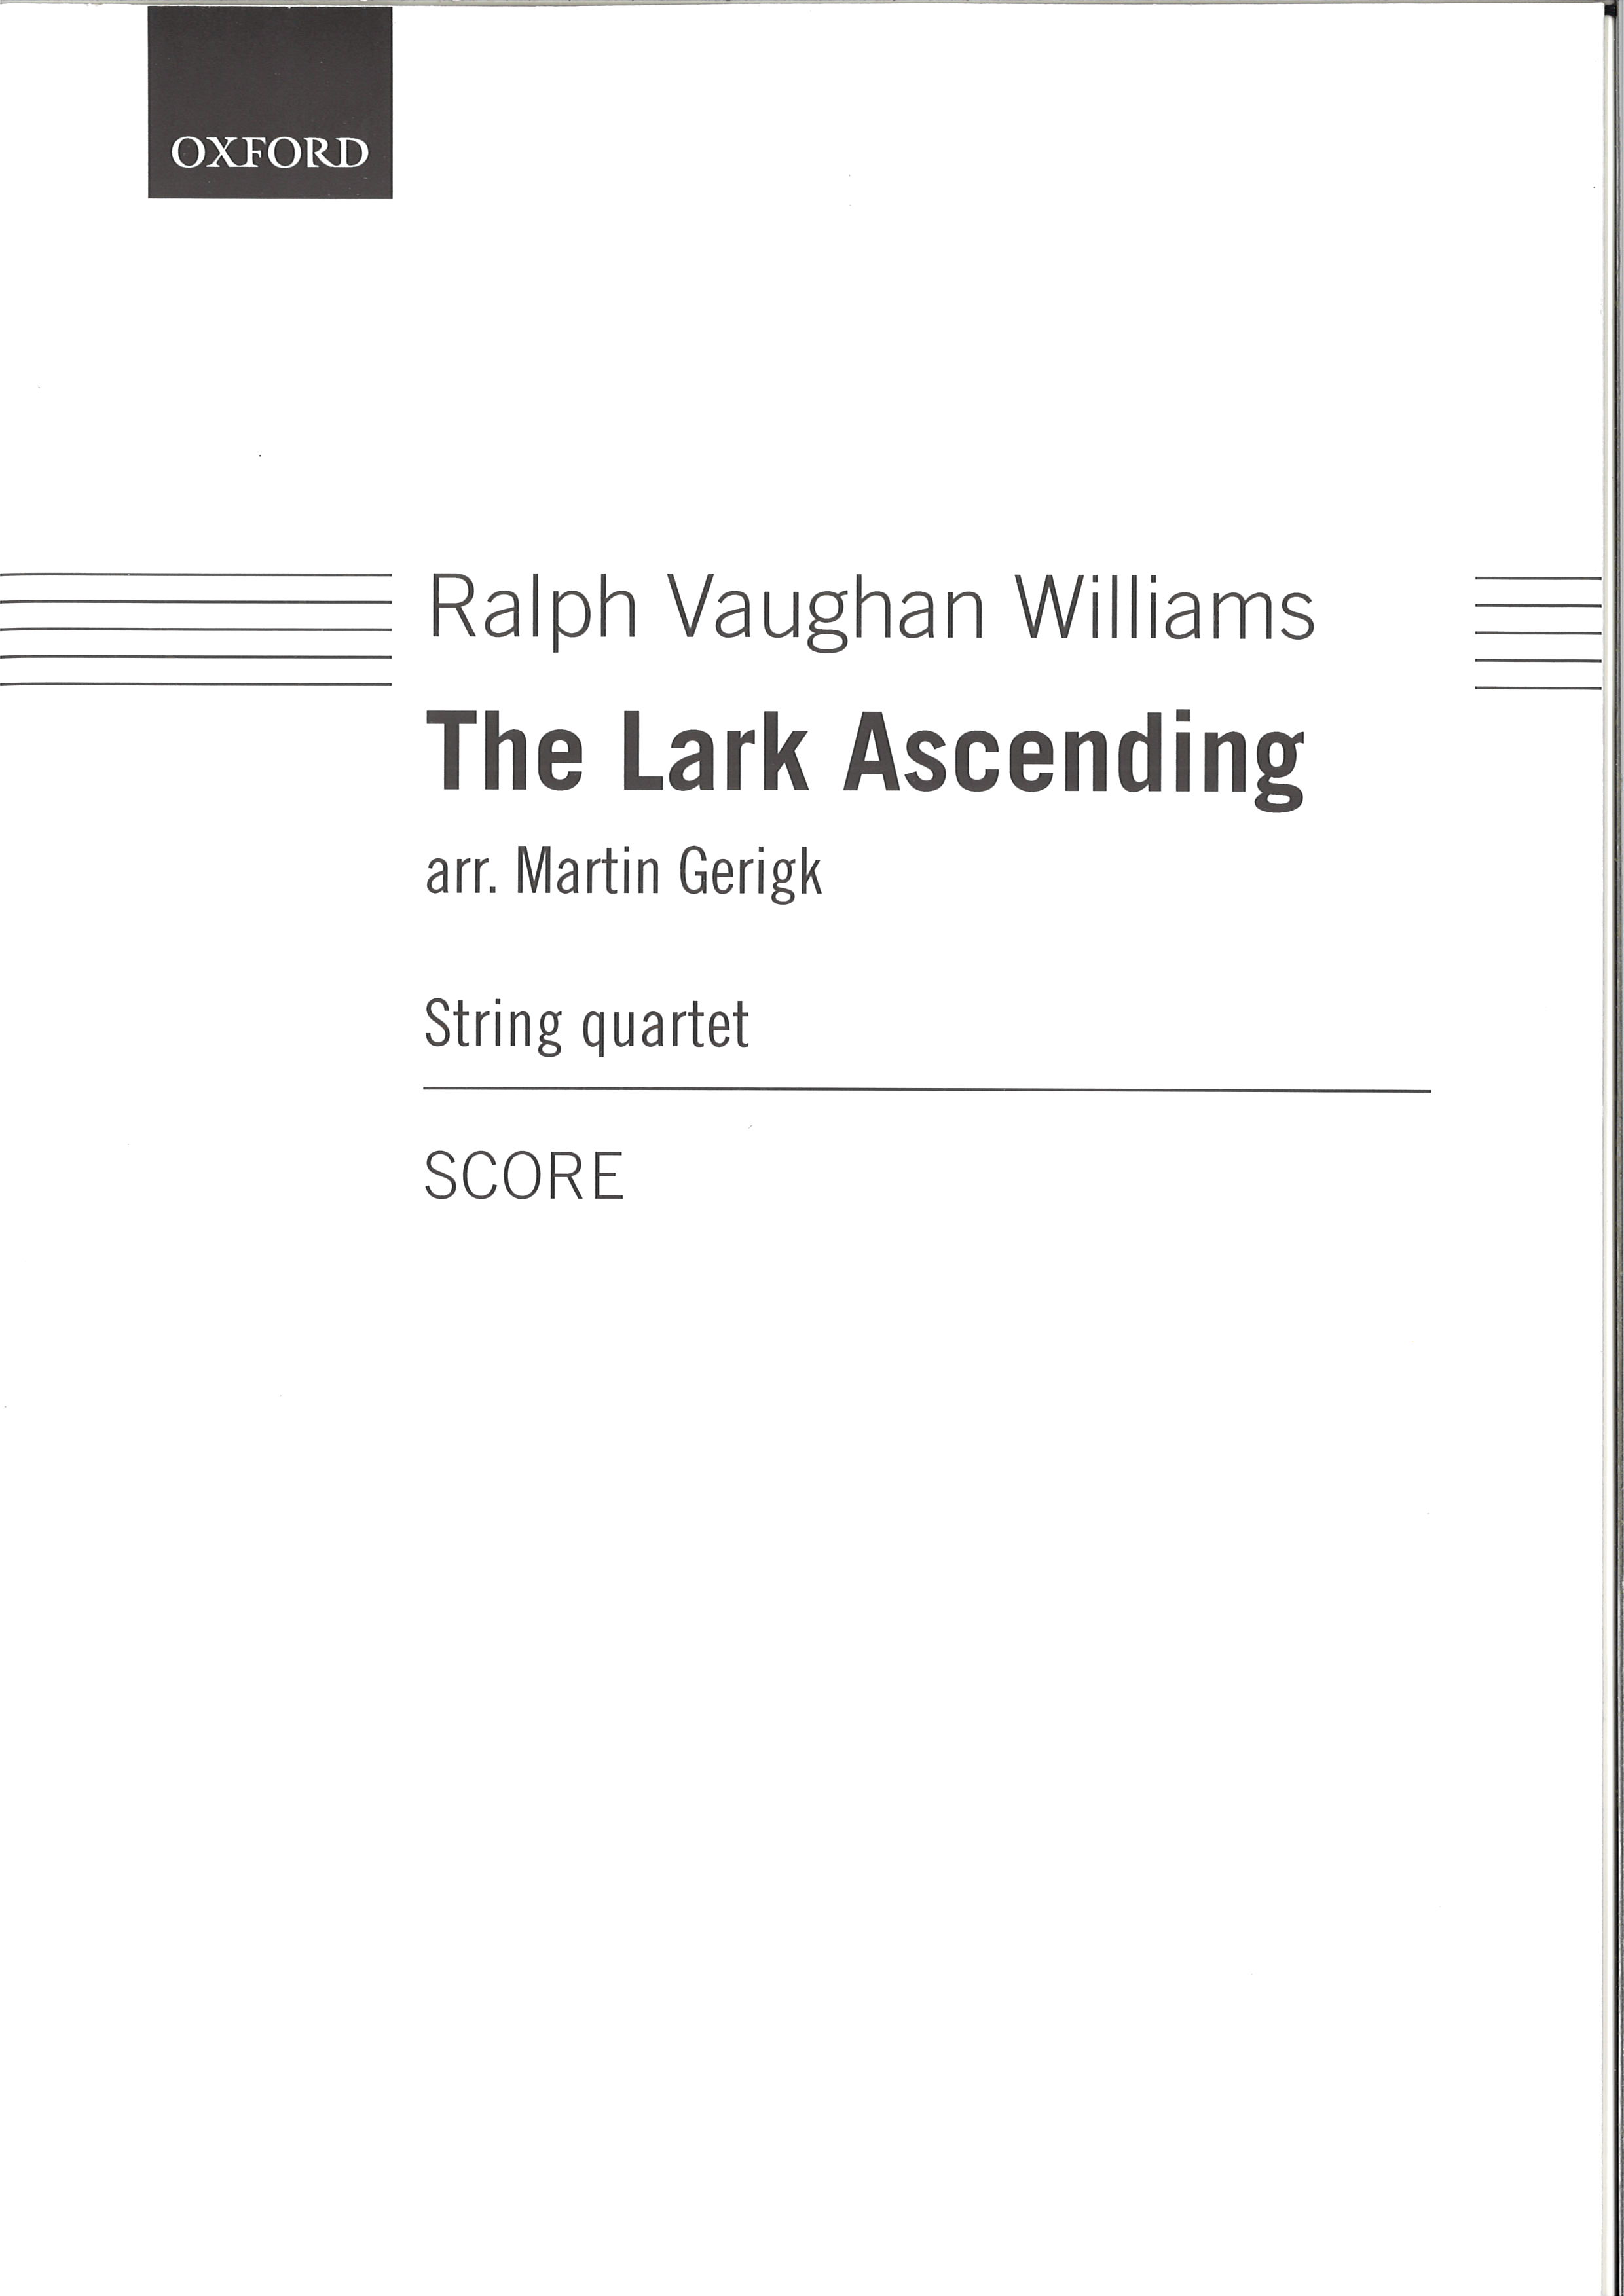 アカデミアミュージック / The Lark Ascending, arr. for String Quartet